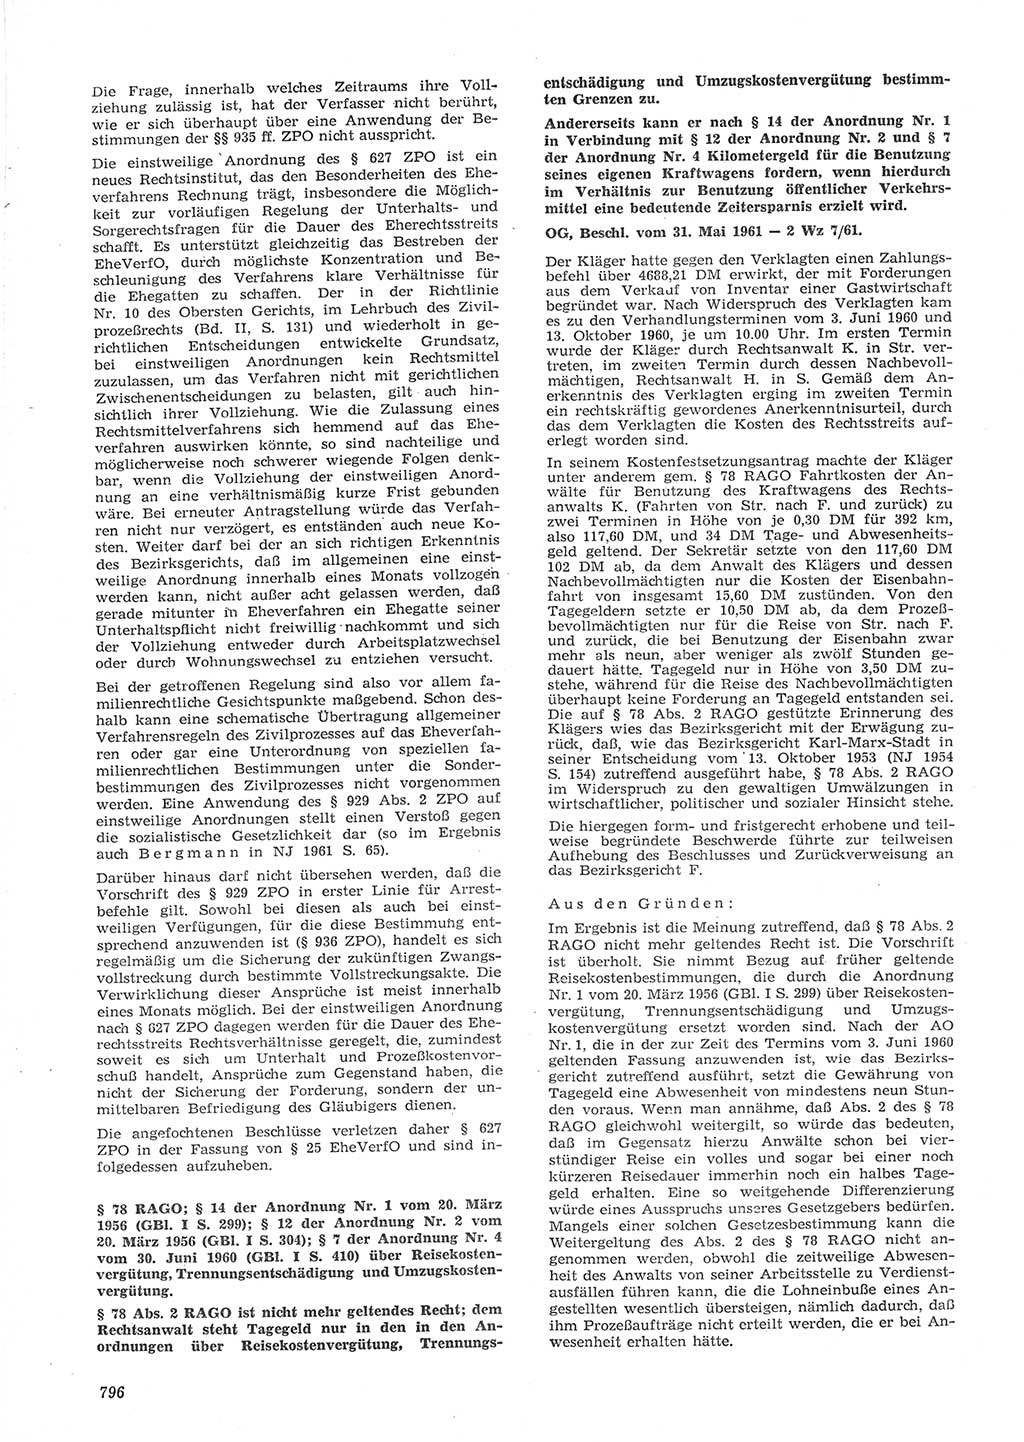 Neue Justiz (NJ), Zeitschrift für Recht und Rechtswissenschaft [Deutsche Demokratische Republik (DDR)], 15. Jahrgang 1961, Seite 796 (NJ DDR 1961, S. 796)